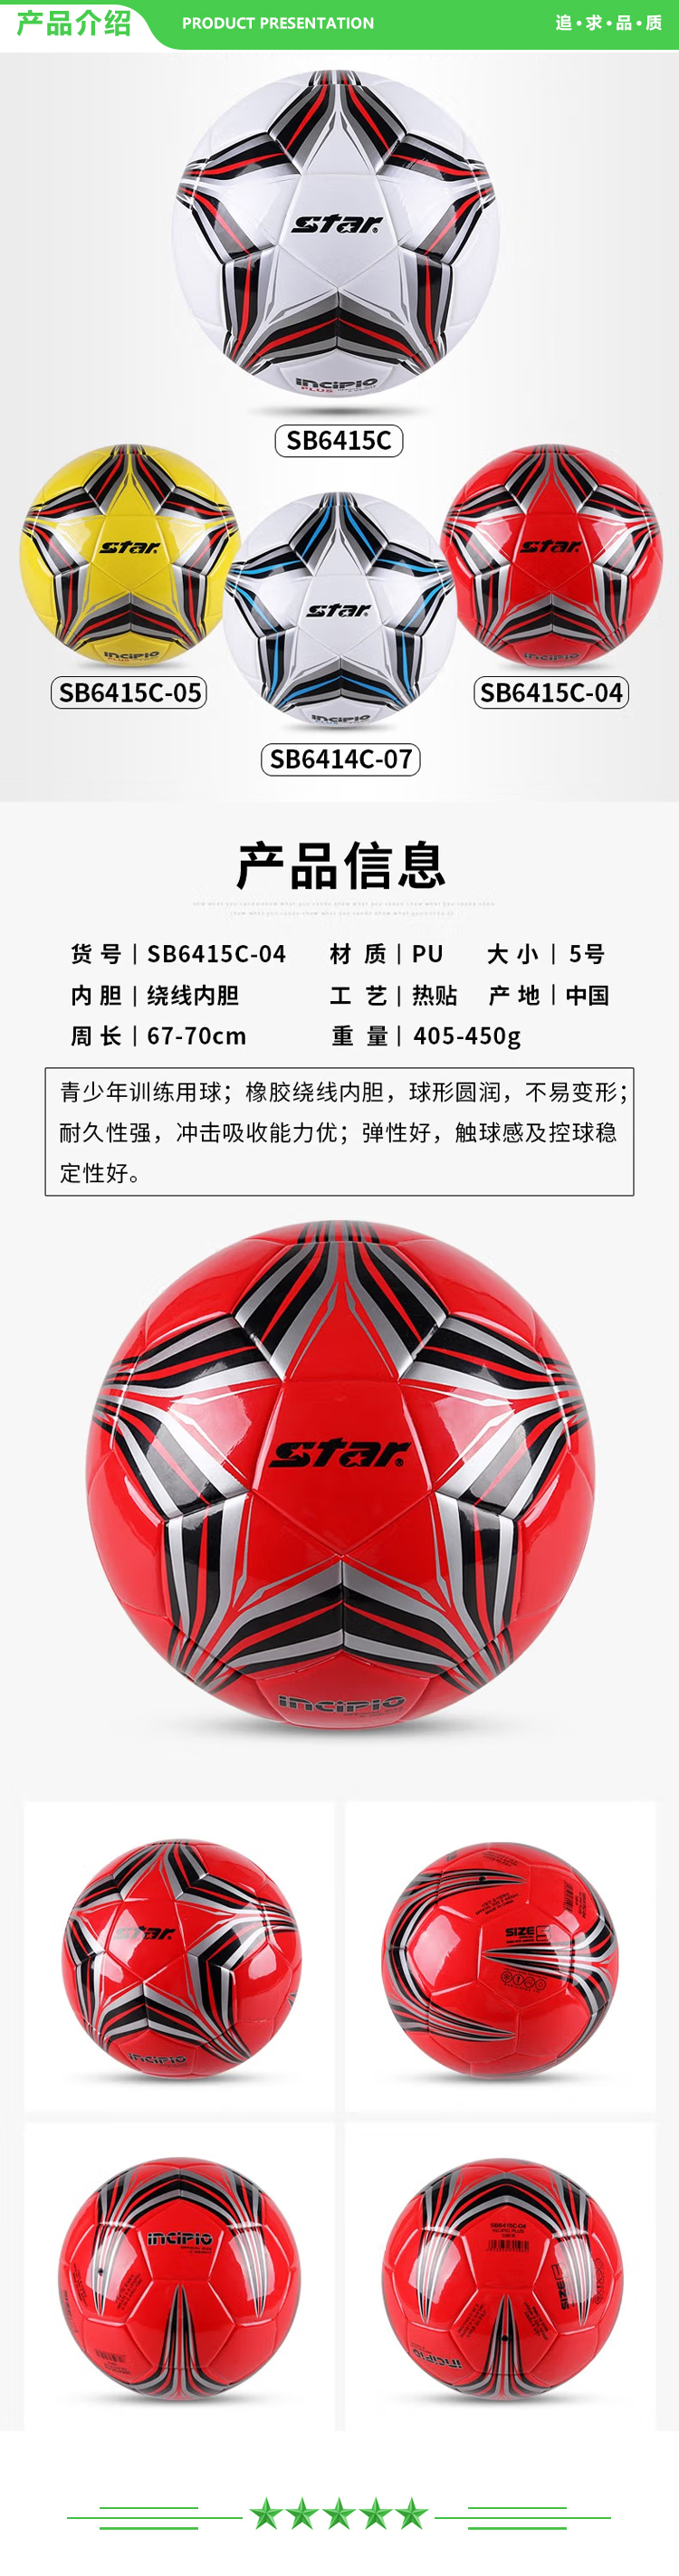 世达 star SB6415-04（5号中学生 成人用球）足球 4号中学生儿童青少年训练比赛用球稳定耐磨.jpg